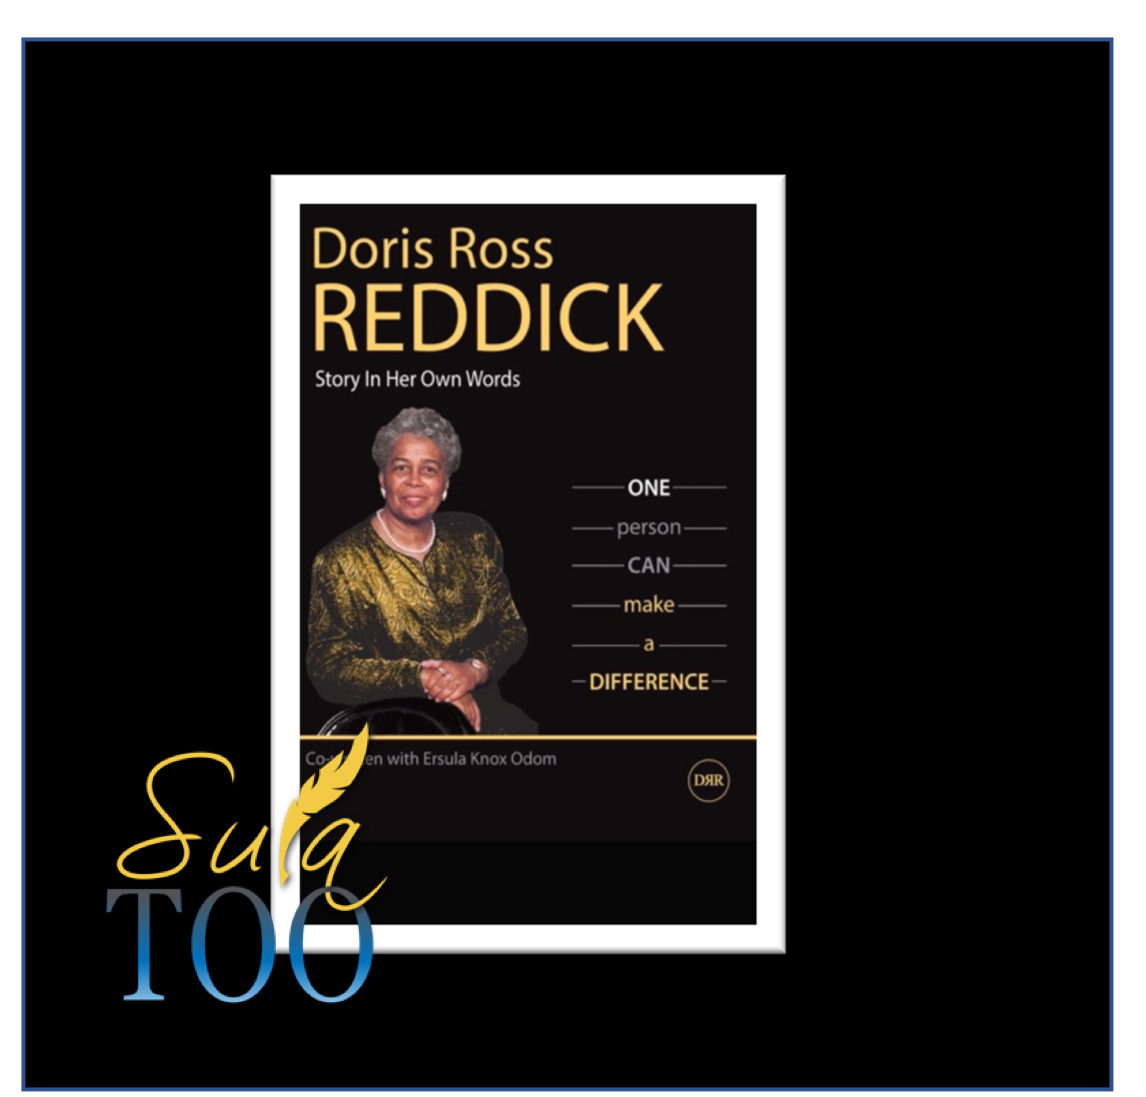 Doris Ross Reddick